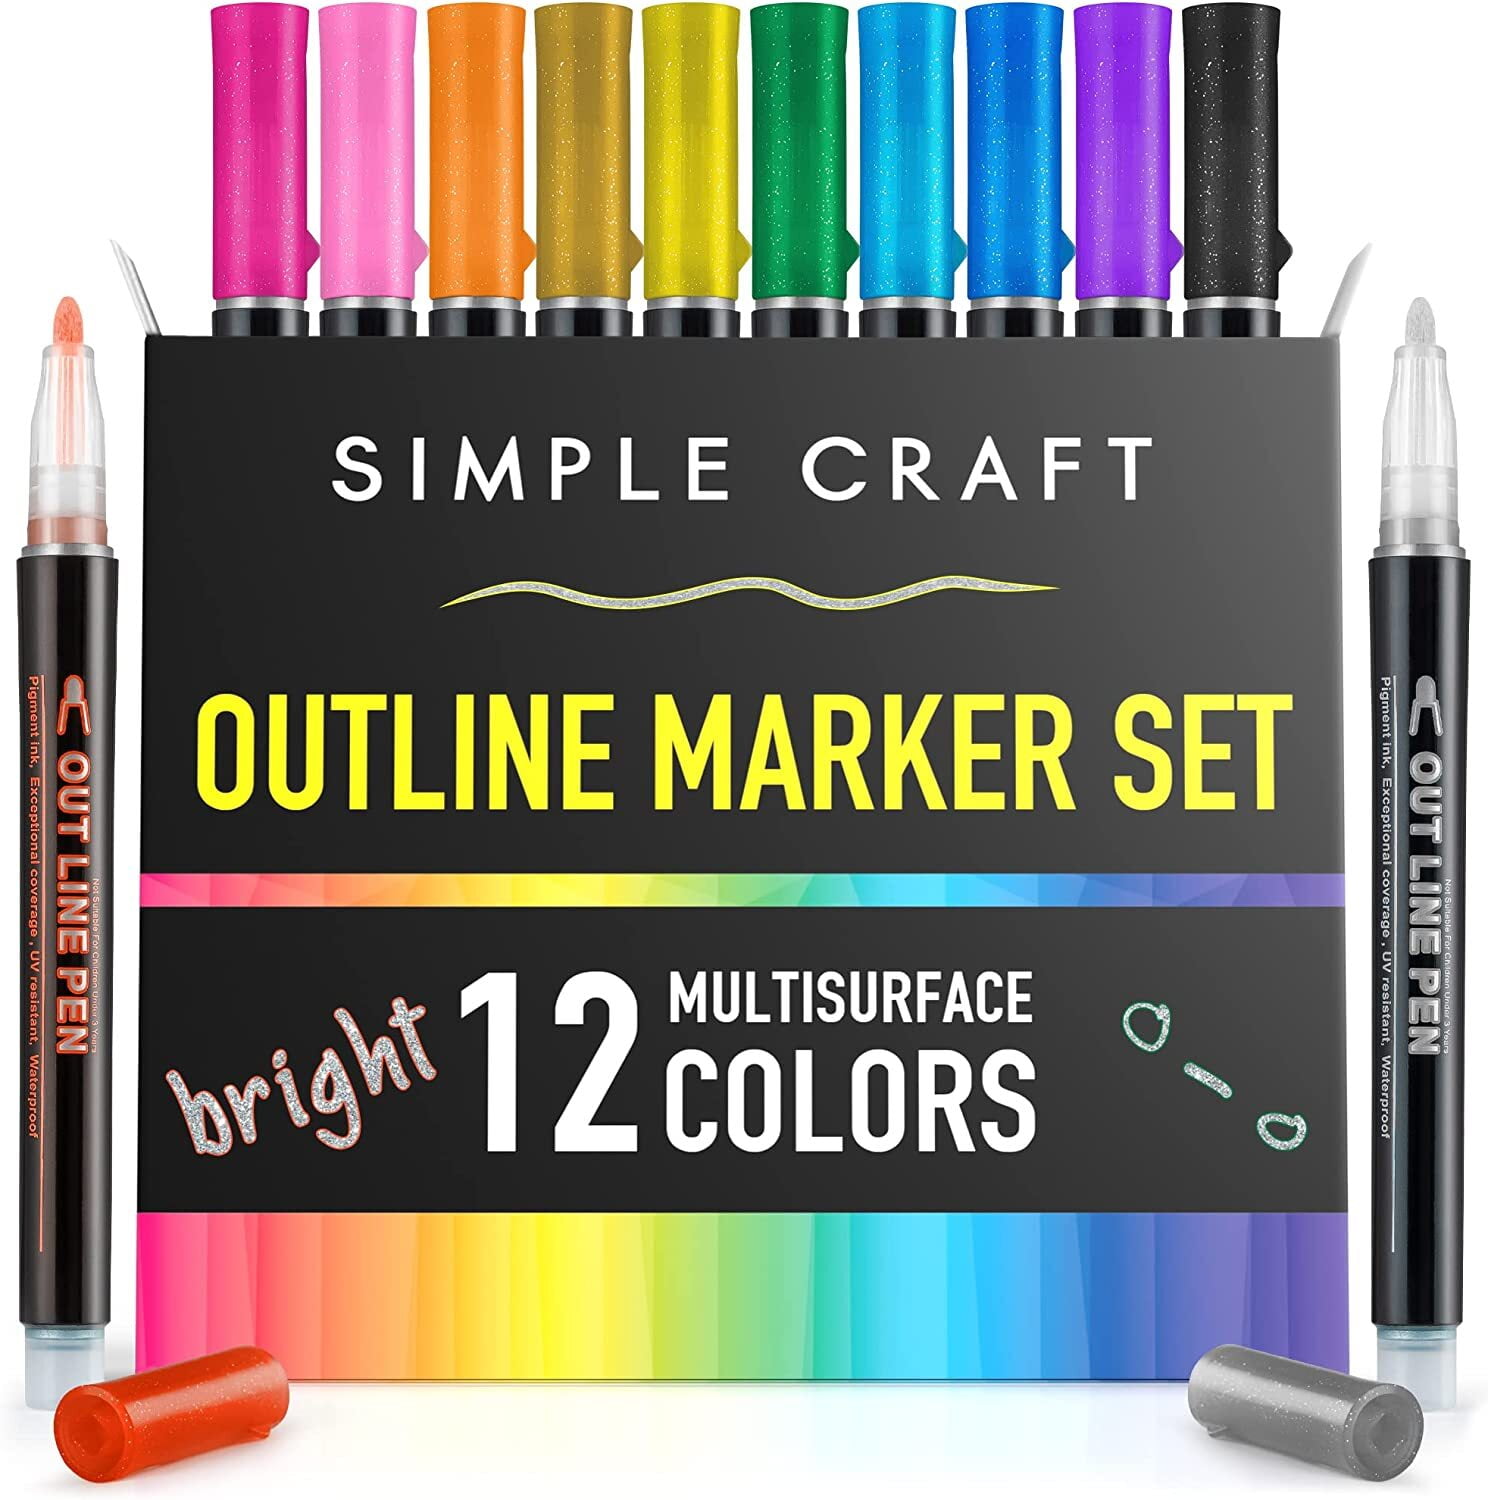 Mr. Sketch Scented Marker Set - Assorted Colors, Set of 12, BLICK Art  Materials